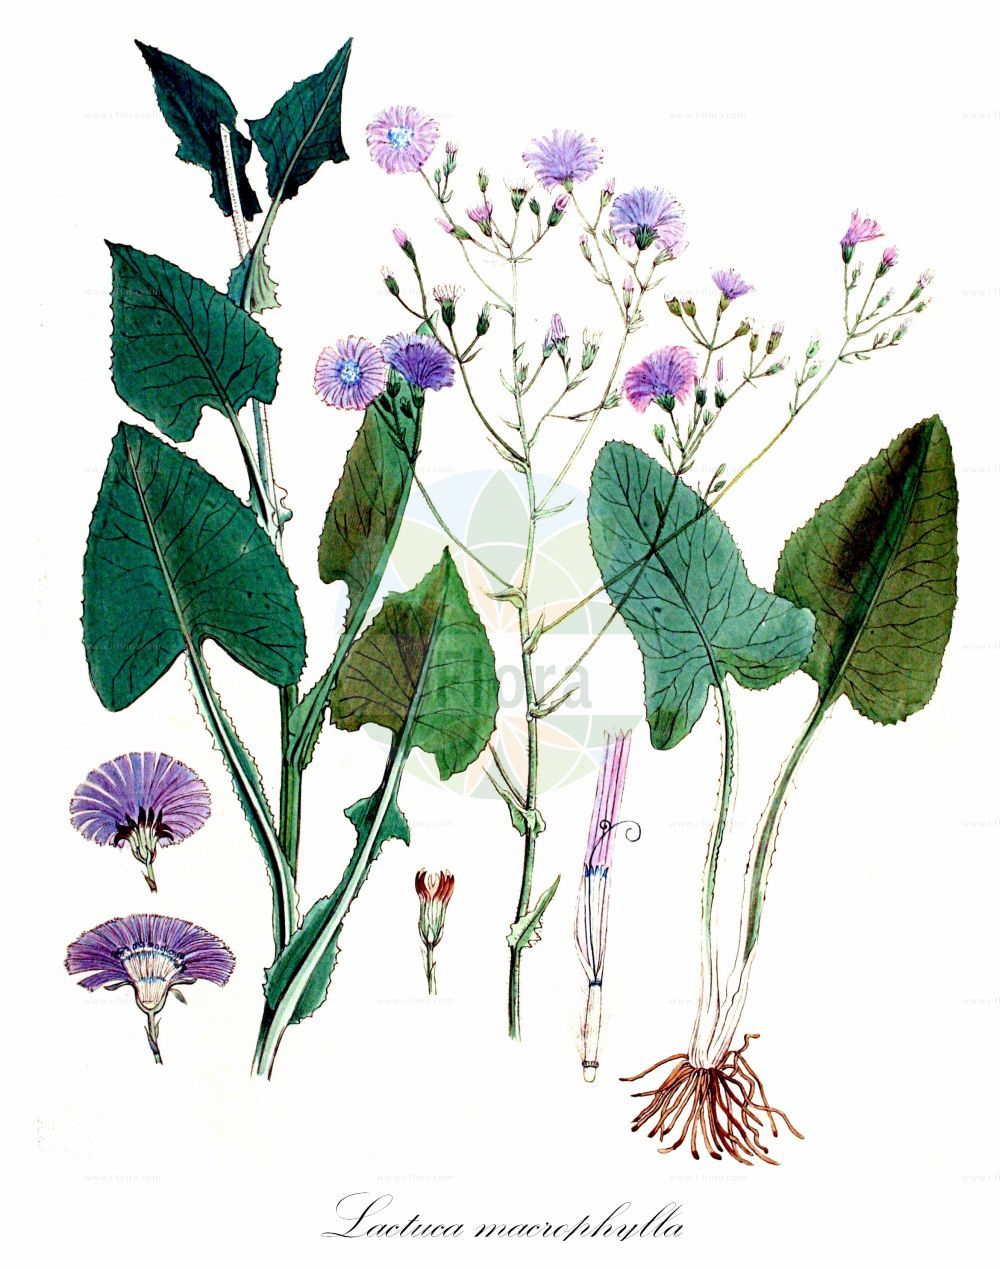 Historische Abbildung von Lactuca macrophylla (Großblättriger Milchlattich - Common Blue-sow-Thistle). Das Bild zeigt Blatt, Bluete, Frucht und Same. ---- Historical Drawing of Lactuca macrophylla (Großblättriger Milchlattich - Common Blue-sow-Thistle). The image is showing leaf, flower, fruit and seed.(Lactuca macrophylla,Großblättriger Milchlattich,Common Blue-sow-Thistle,Cicerbita acuminata,Cicerbita conrathiana,Cicerbita grandis,Cicerbita macrophylla,Cicerbita sevanensis,Lactuca macrophylla,Mulgedium acuminatum,Mulgedium glabrum,Mulgedium grande,Mulgedium macrophyllum,Prenanthes cacaliifolia,Sonchus cacaliifolius,Sonchus macrophyllus,Grossblaettriger Milchlattich,Common Blue-sow-Thistle,Blue Sowthistle,Lactuca,Lattich,Lettuce,Asteraceae,Korbblütengewächse,Daisy family,Blatt,Bluete,Frucht,Same,leaf,flower,fruit,seed,Kops (1800-1934))